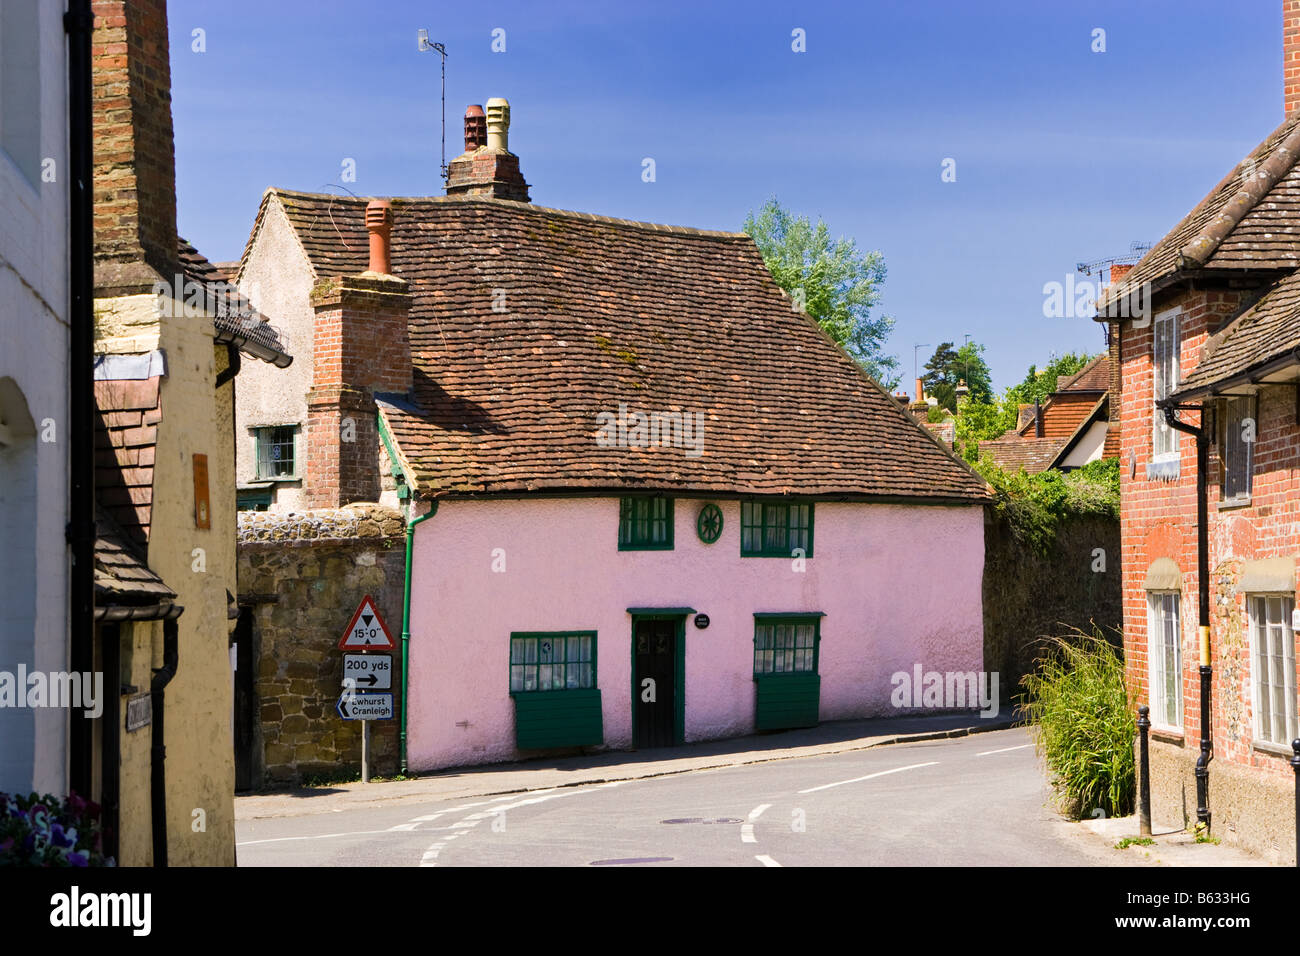 Petite maison de campagne traditionnelle rose anglaise dans le vieux village de Shere, Surrey, Angleterre, Royaume-Uni Banque D'Images